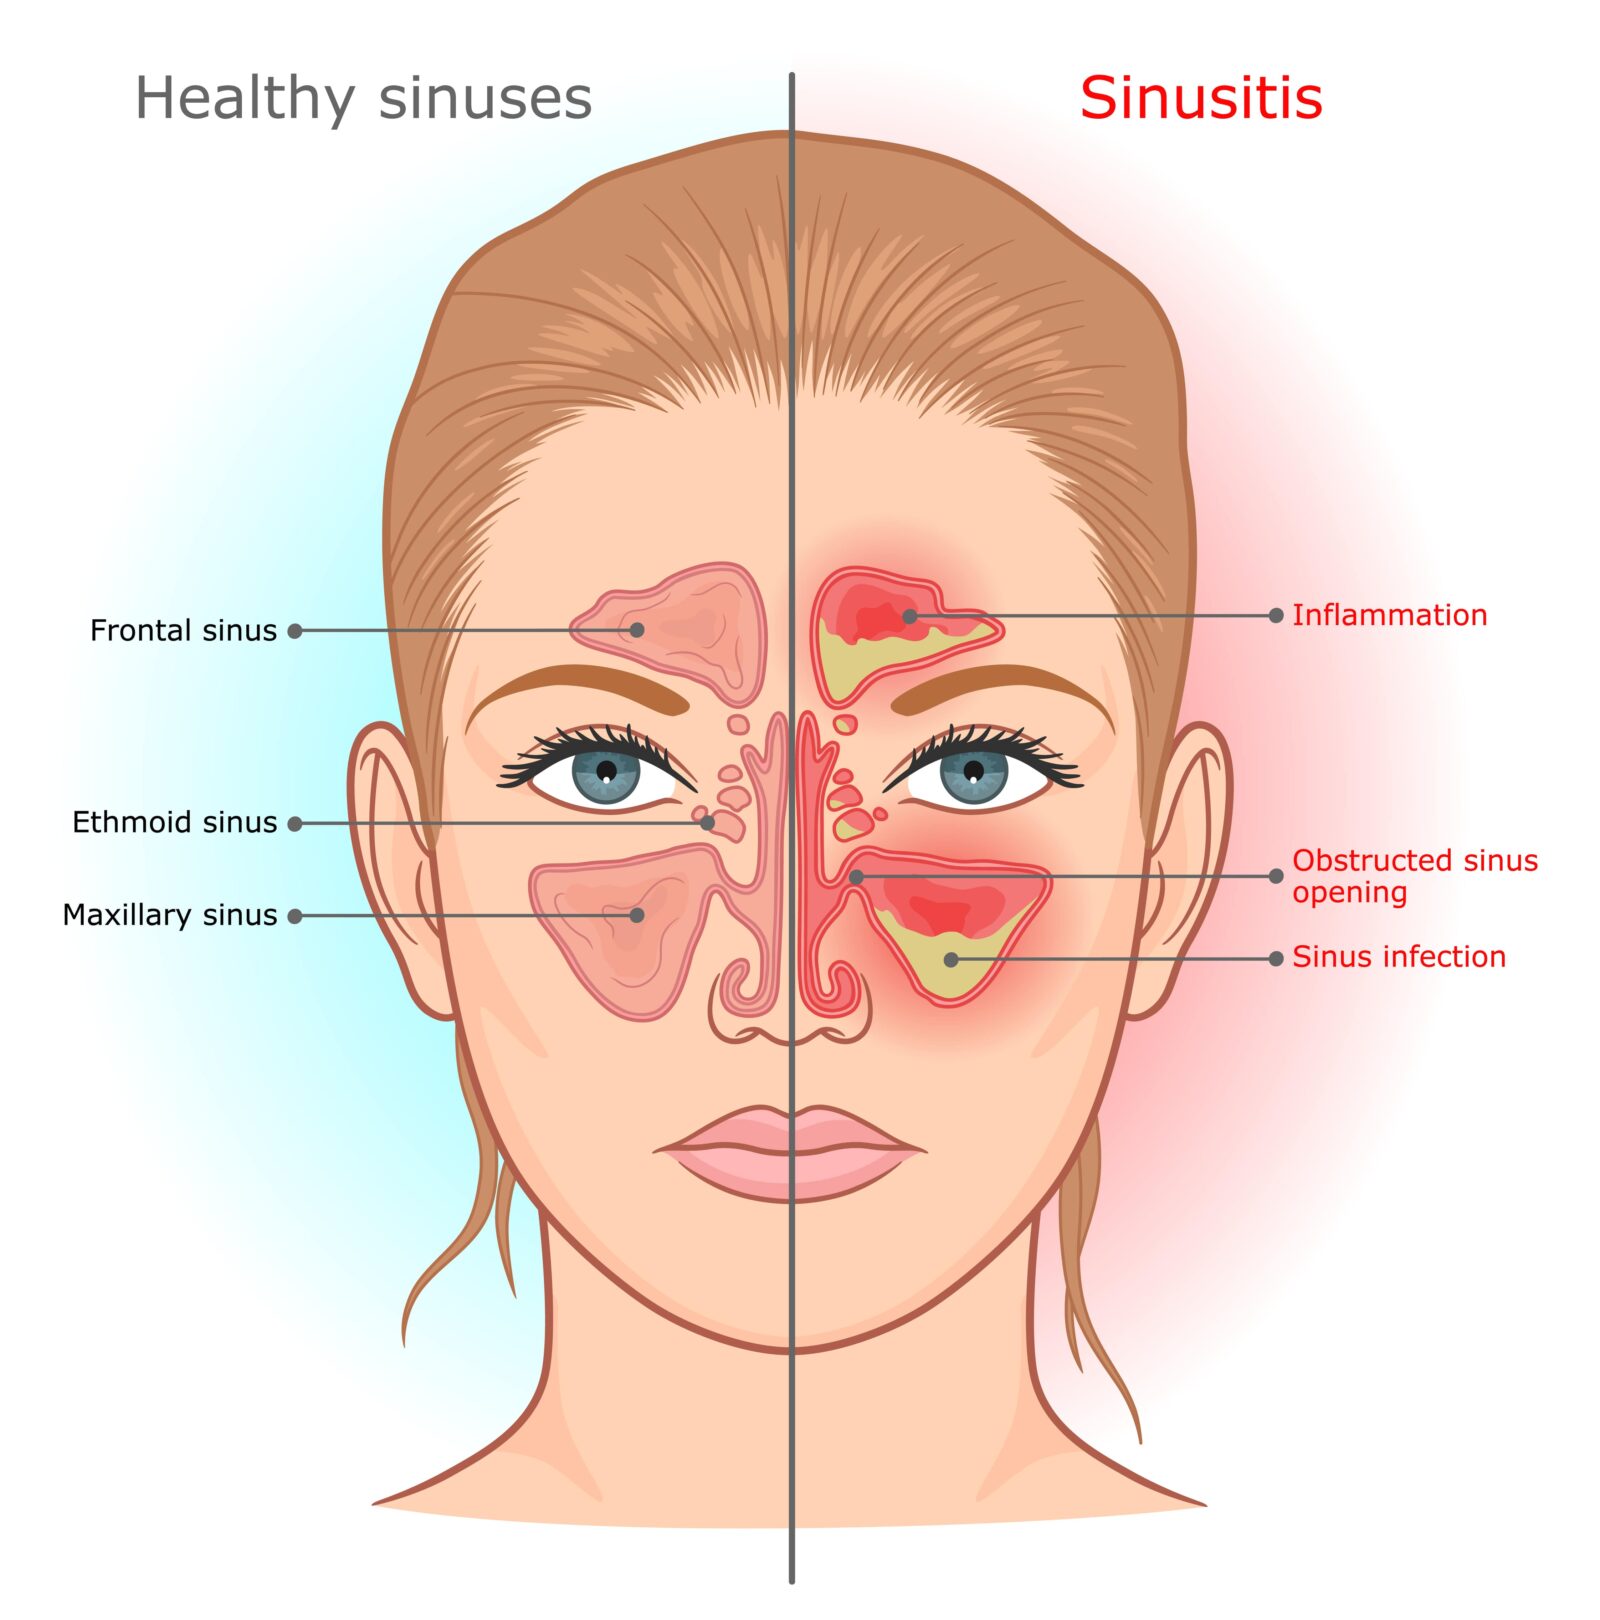 healthy sinus vs. sinusitis 